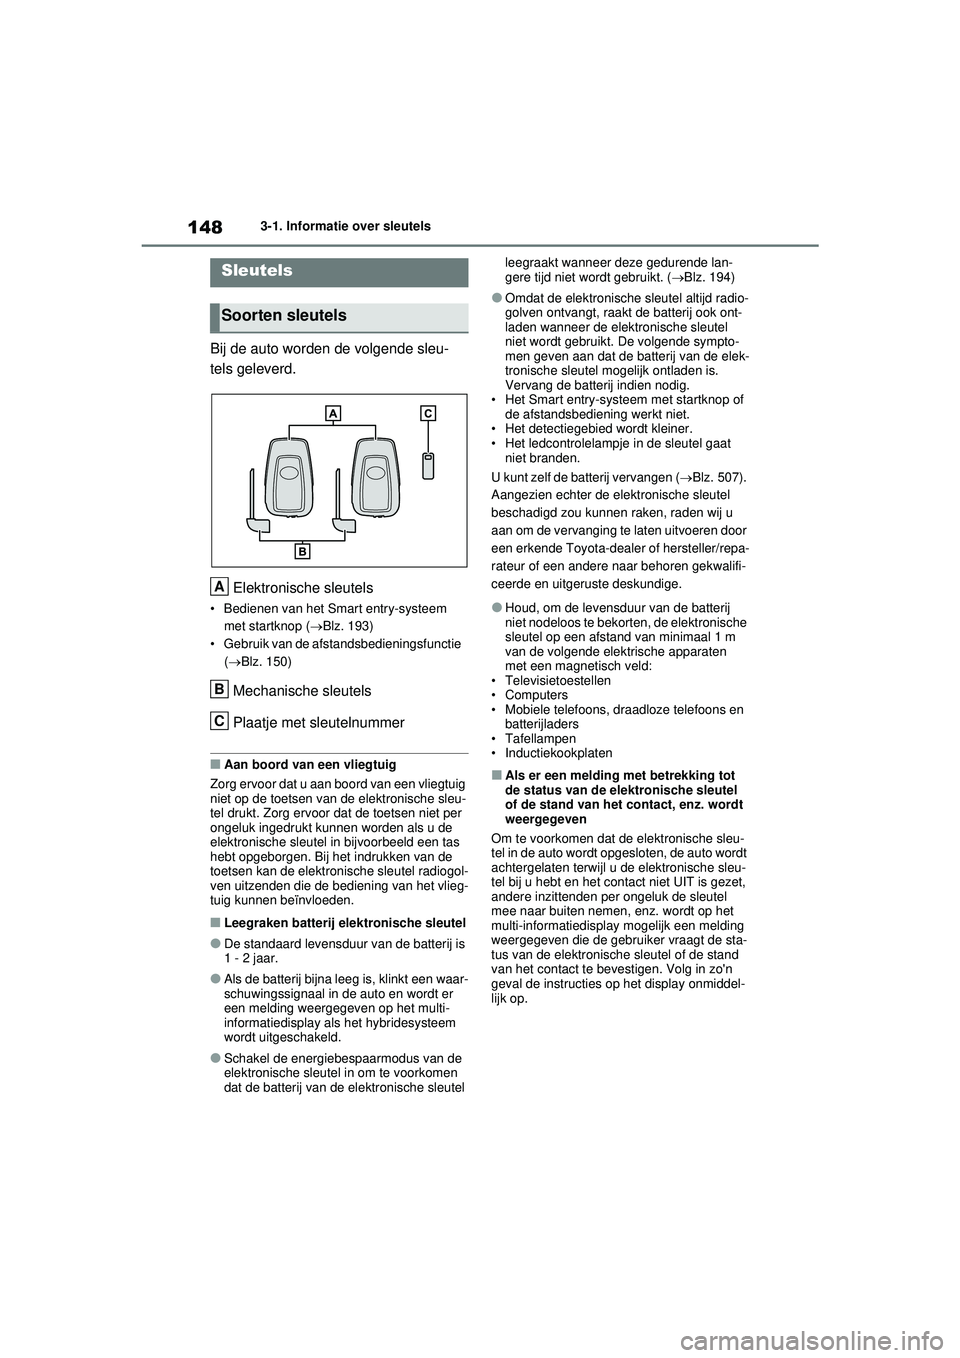 TOYOTA RAV4 HYBRID 2021  Instructieboekje (in Dutch) 1483-1. Informatie over sleutels
3-1.Informatie over sleutels
Bij de auto worden de volgende sleu-
tels geleverd.Elektronische sleutels
• Bedienen van het Smart entry-systeem met startknop ( Blz.